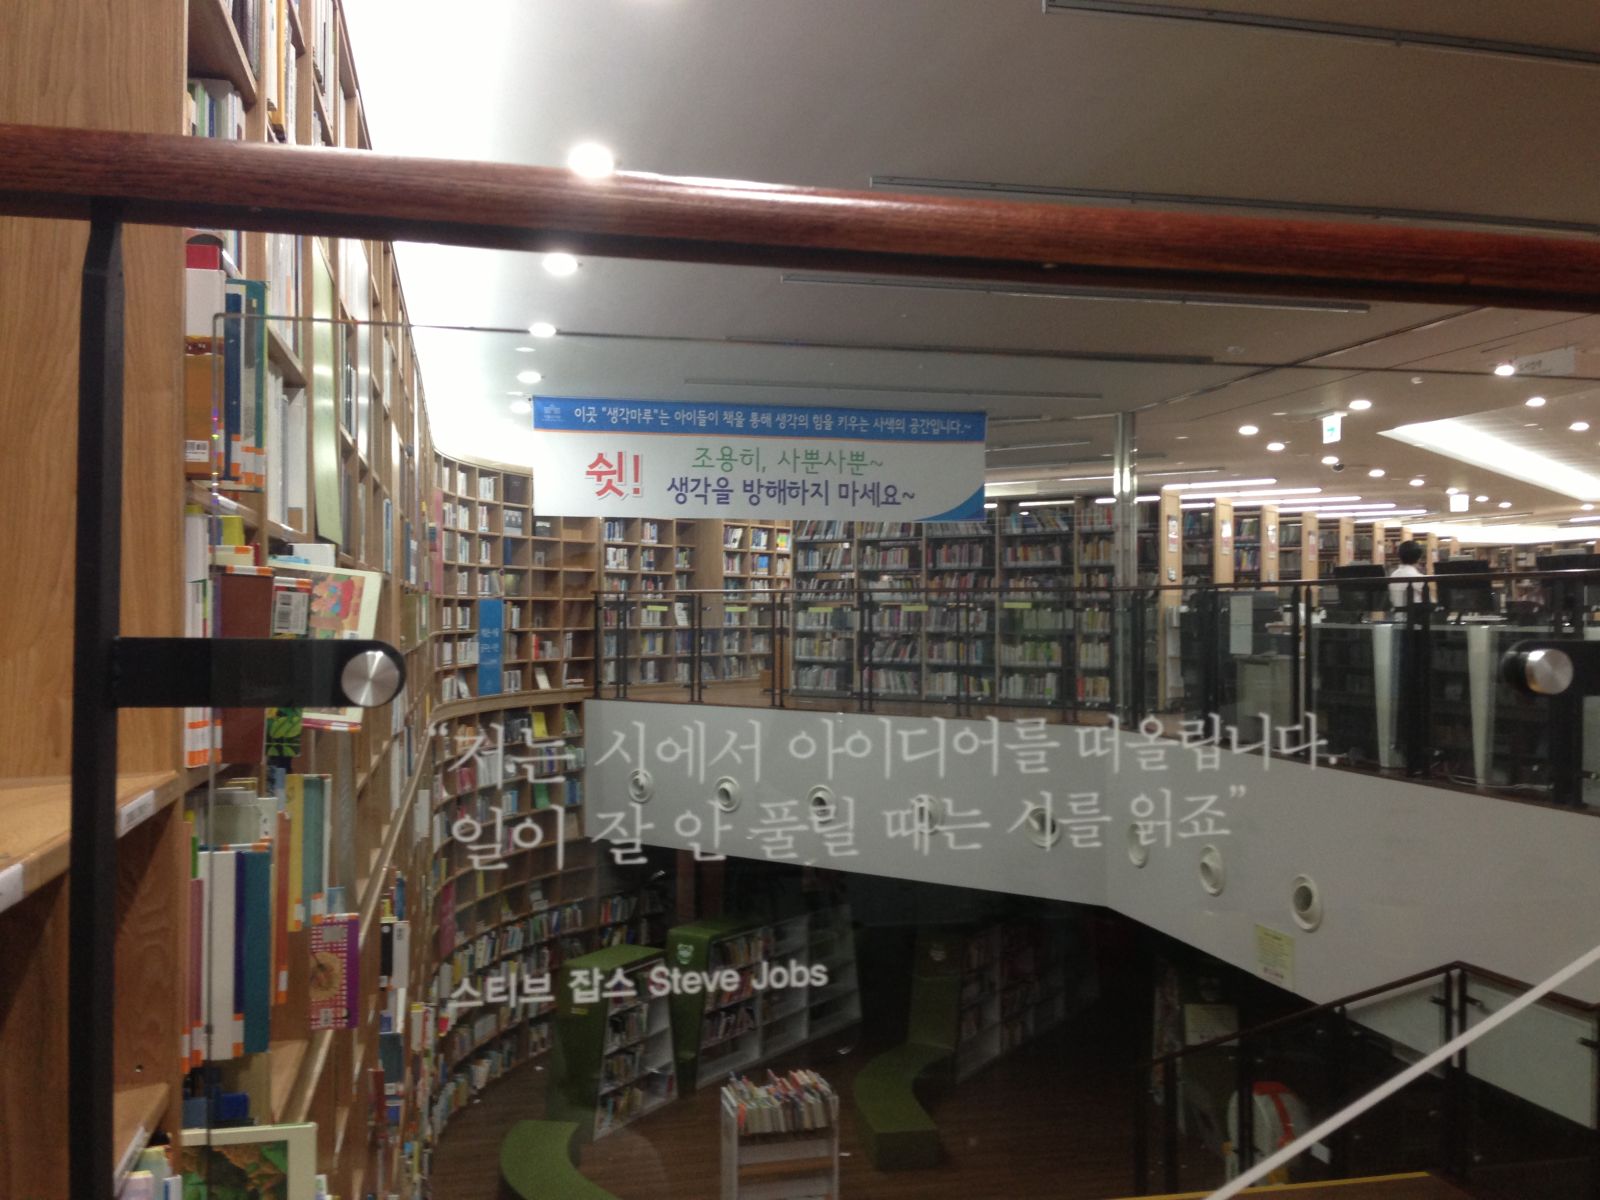 11月, 詩가 흐르는 서울도서관으로 오세요 포스터